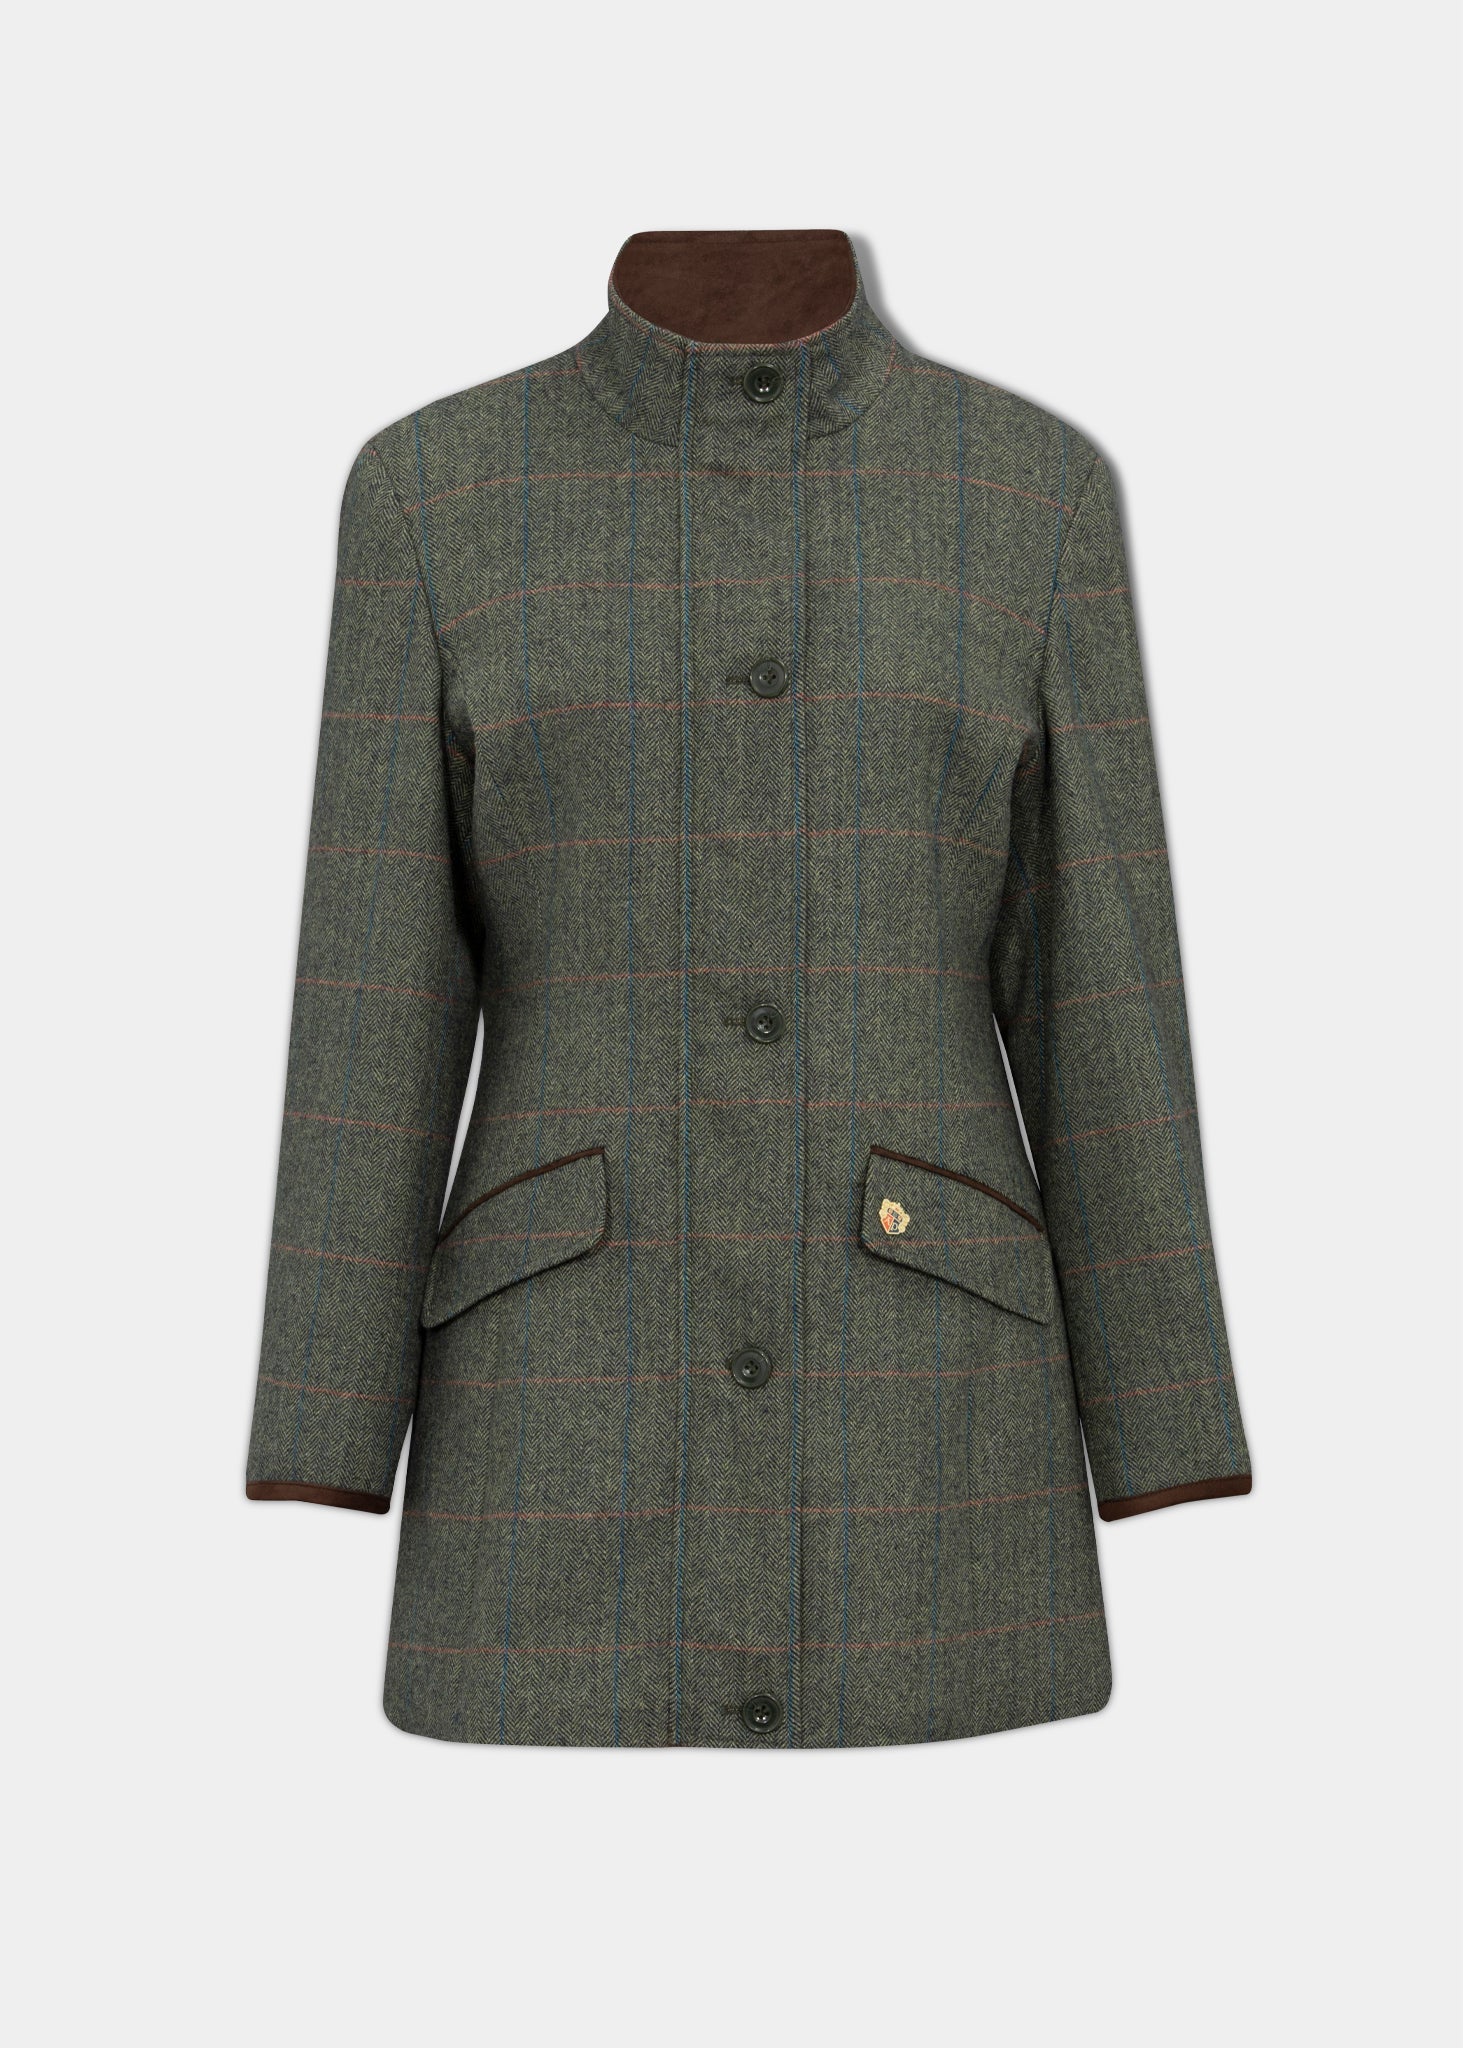 combrook-ladies-tweed-field-jacket-spruce